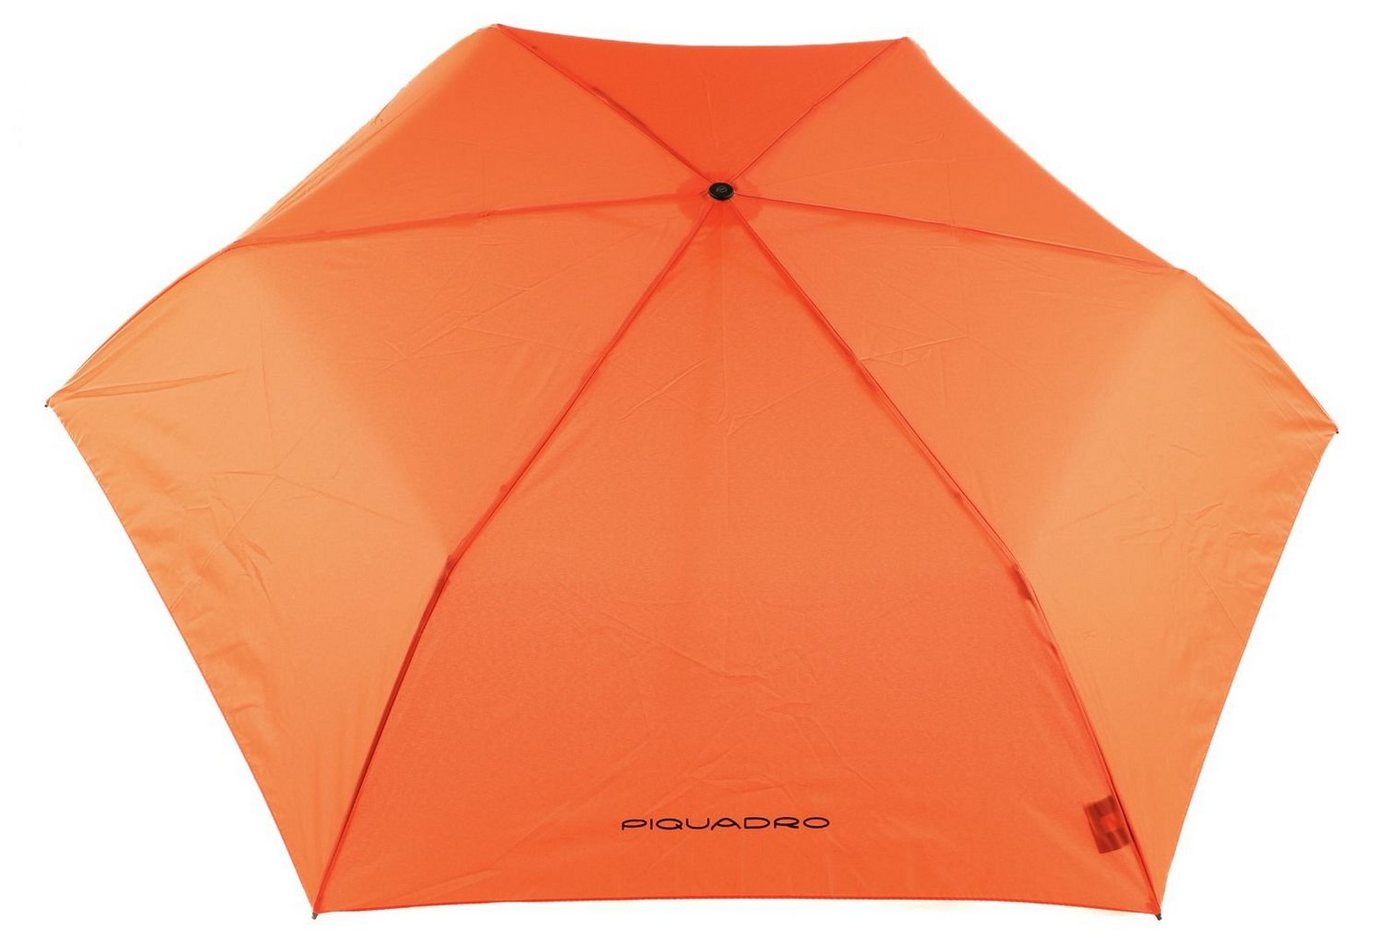 Piquadro Taschenregenschirm Umbrellas von Piquadro